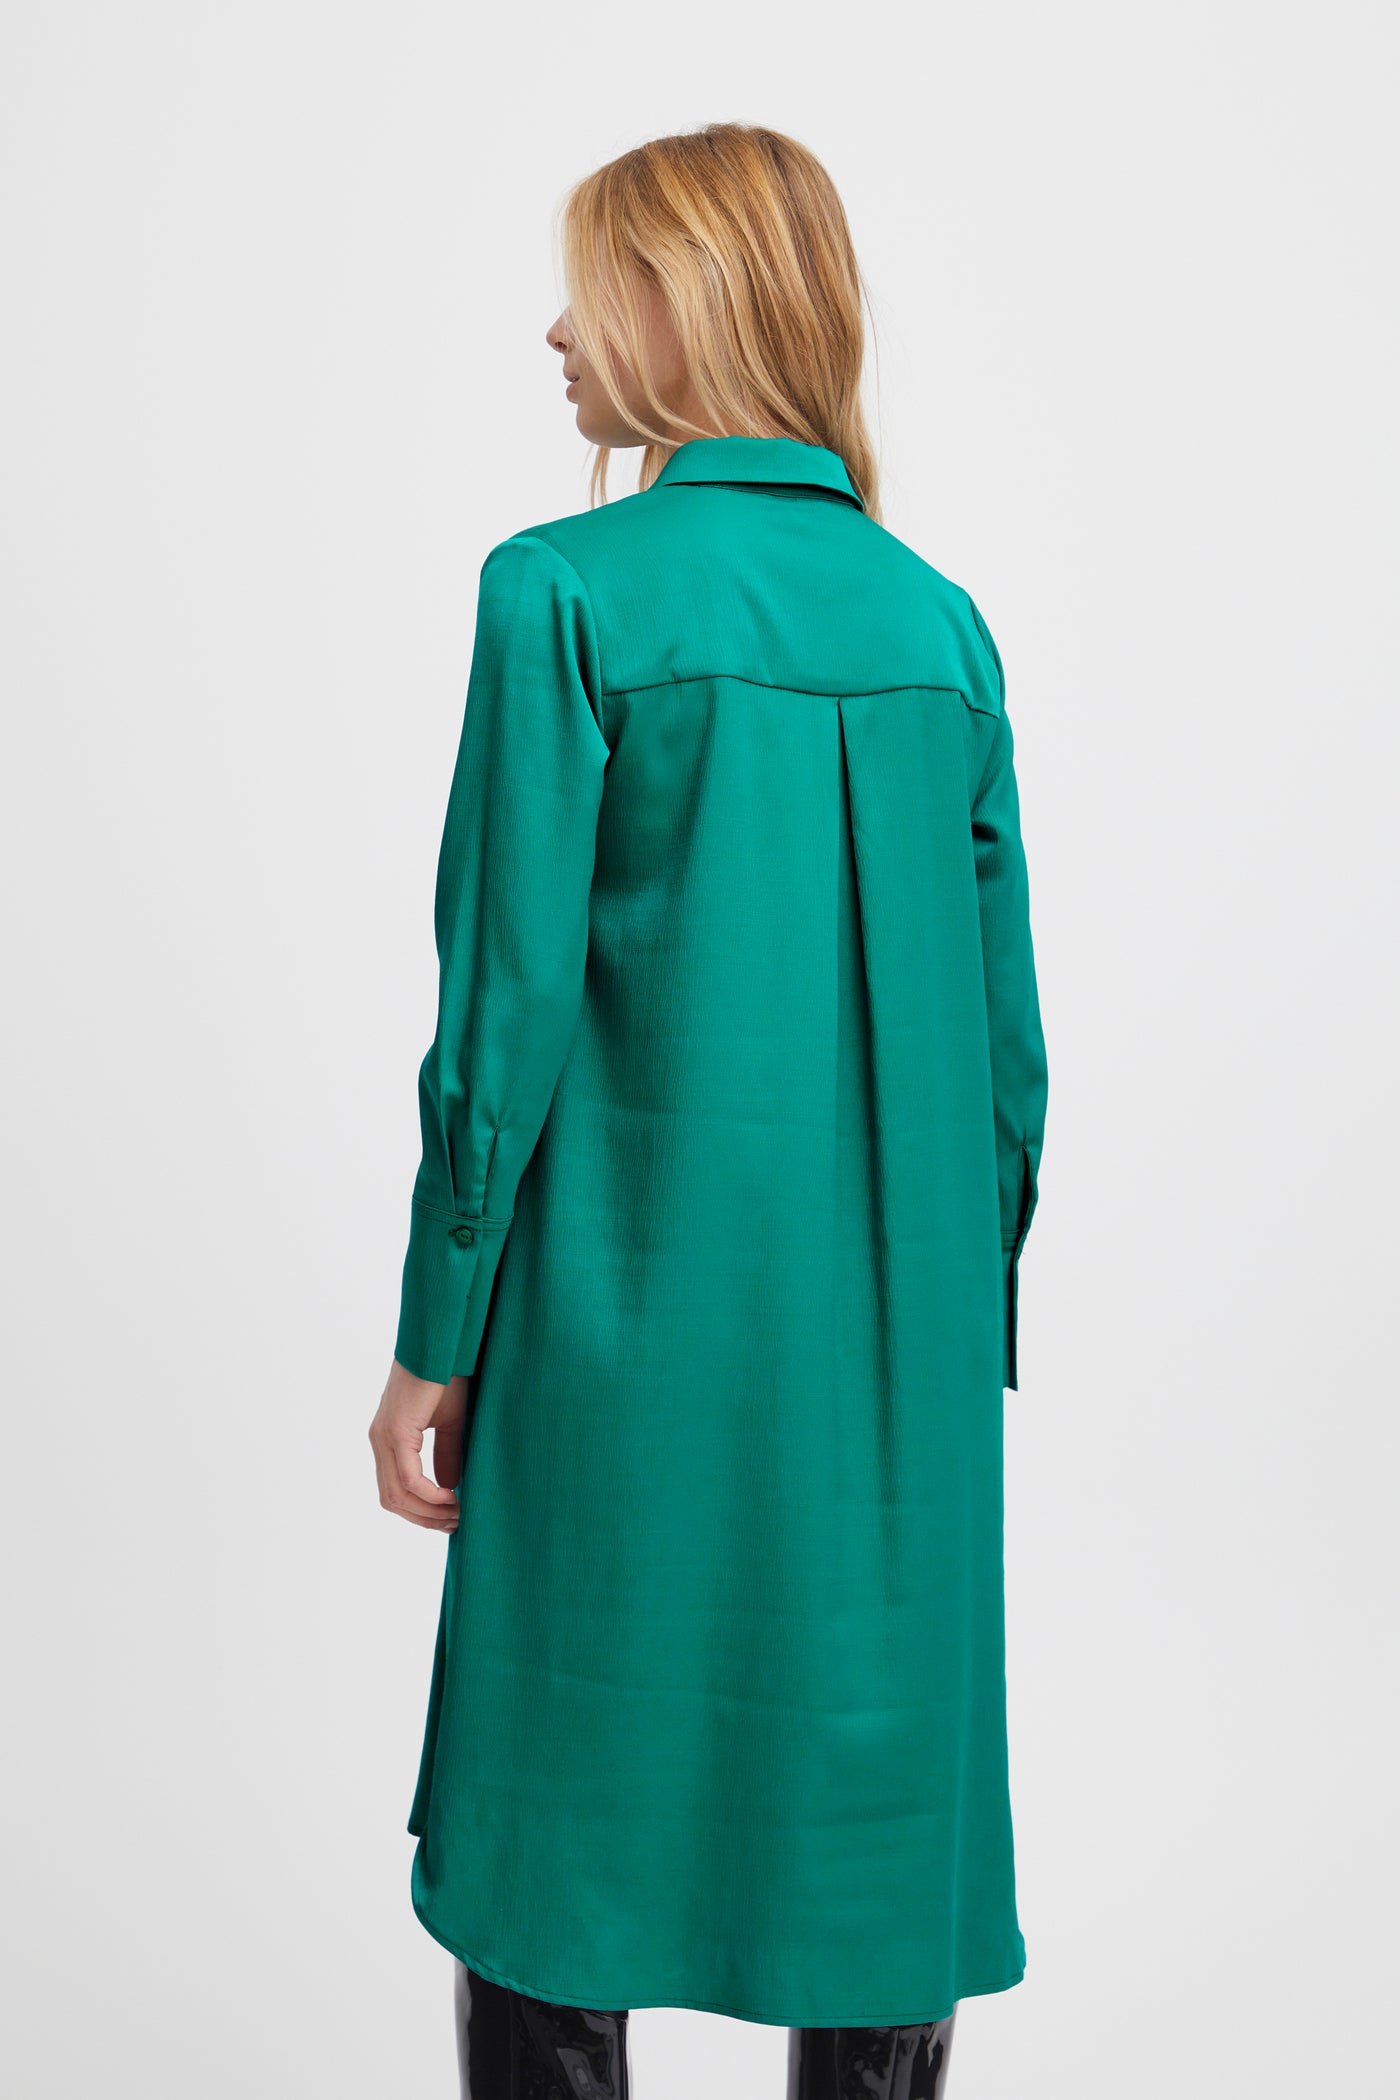 Jimsa jurk groen